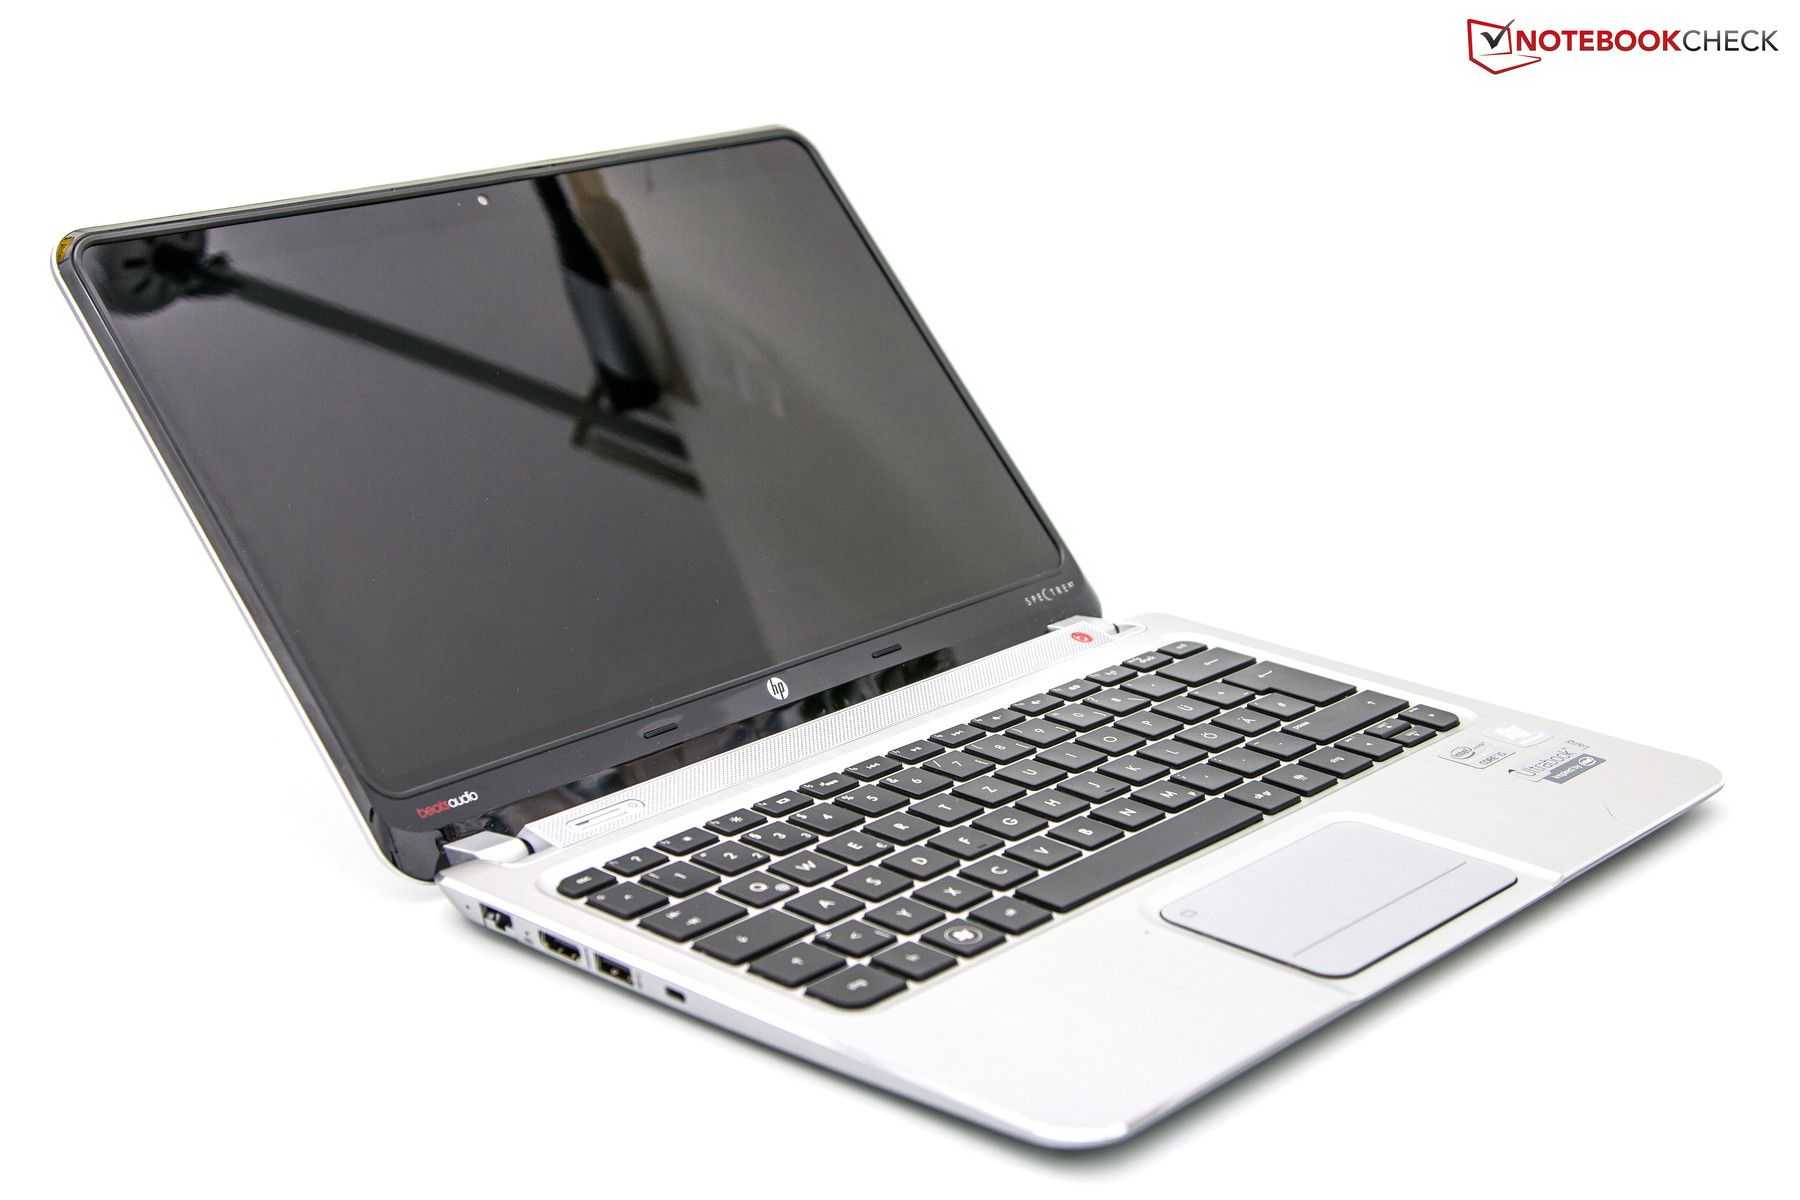 Ноутбук hp spectre xt touchsmart 15-4000er — купить, цена и характеристики, отзывы